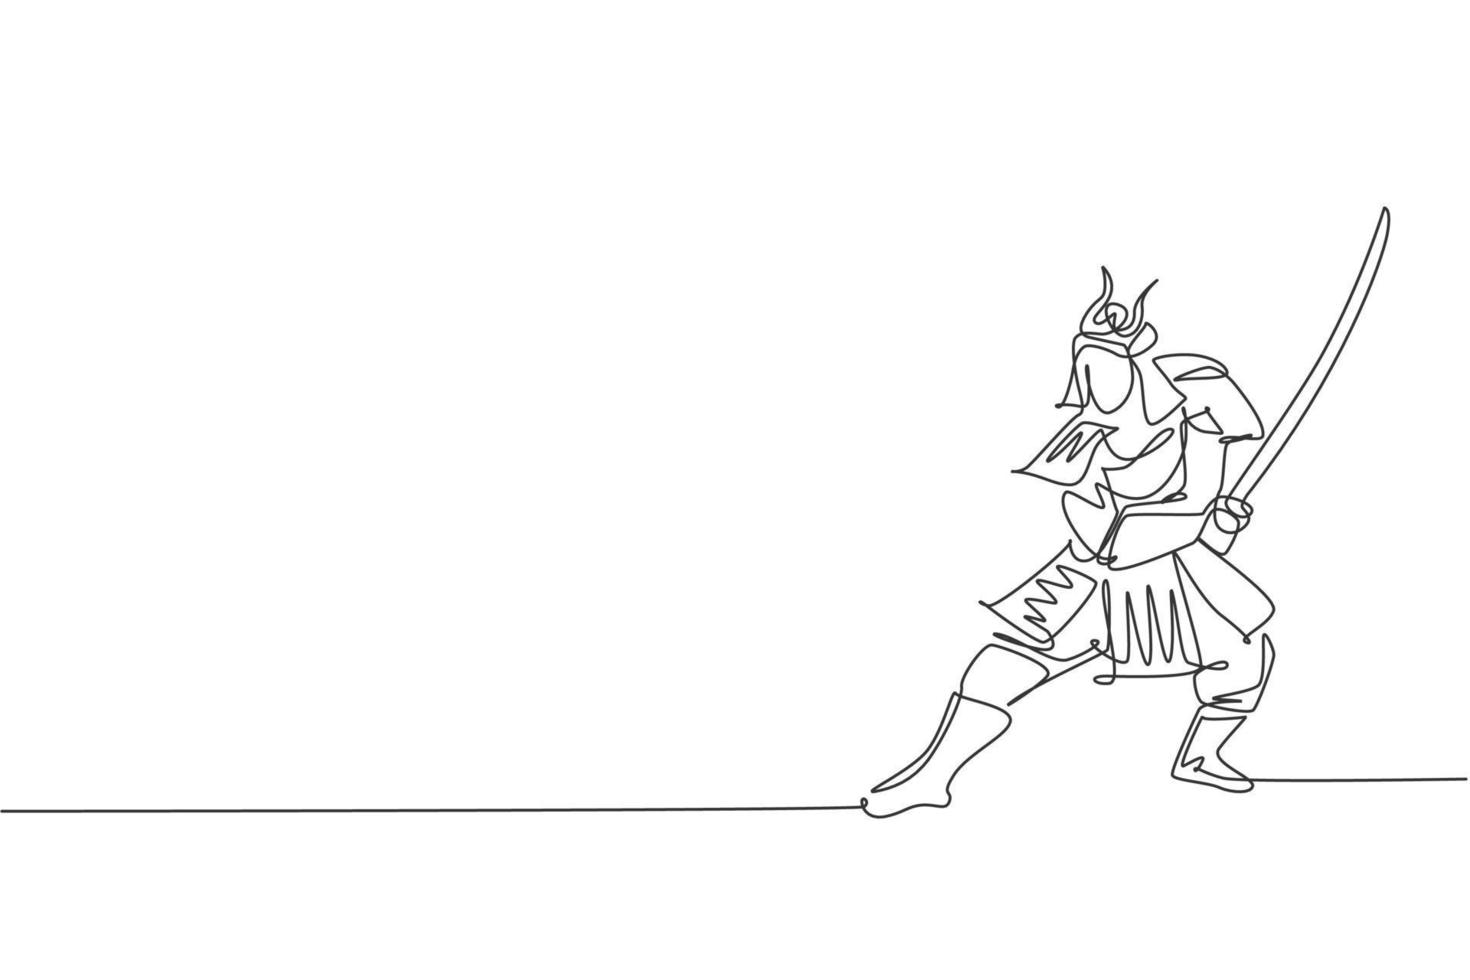 um desenho de linha contínua do jovem samurai shogun usando máscara pronta para atacar na sessão de treinamento. conceito de esporte combativo de arte marcial. ilustração em vetor design de desenho de linha única dinâmica